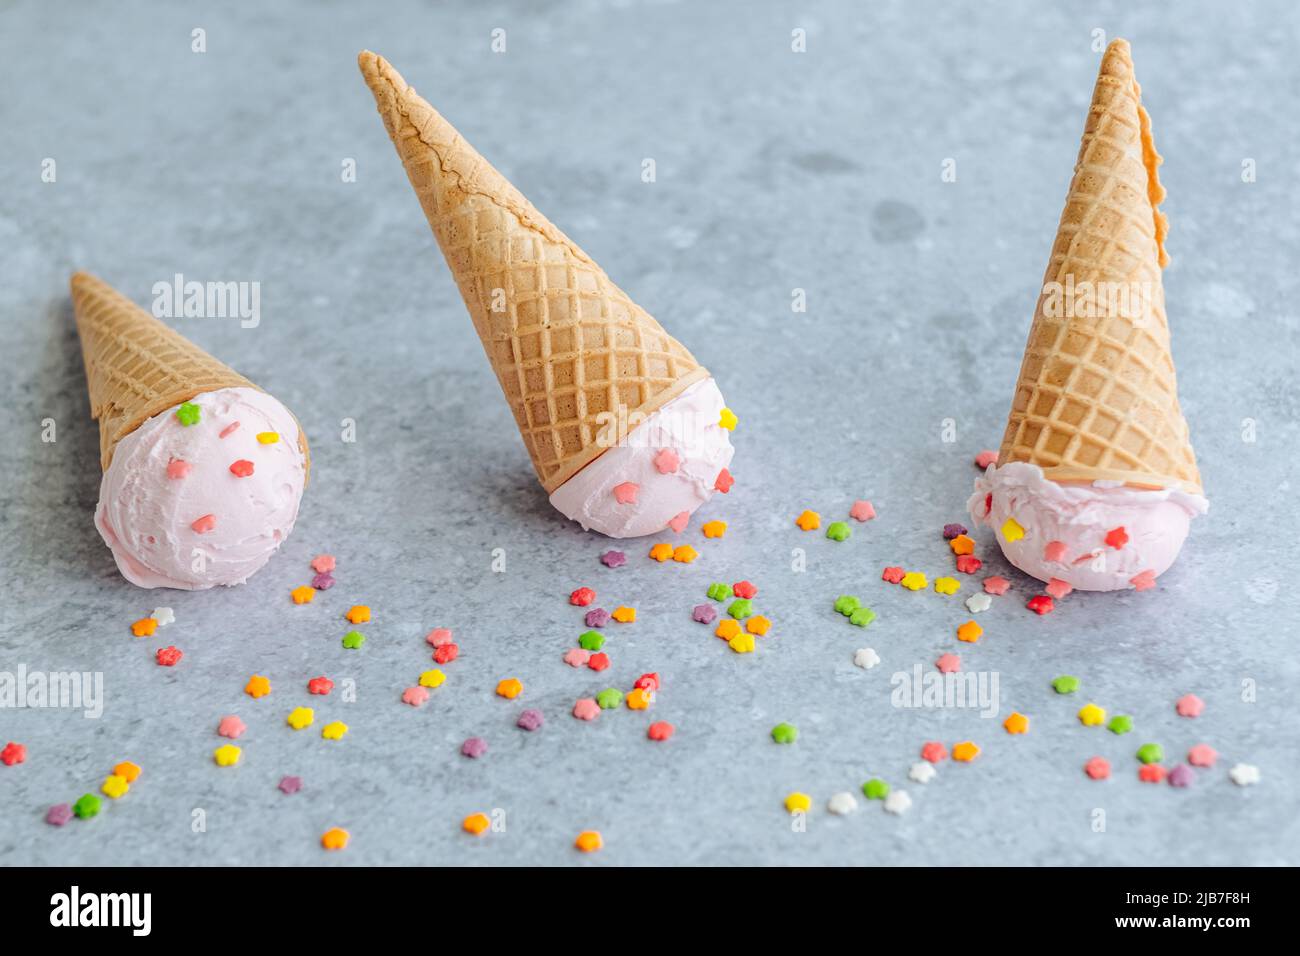 Palla di gelato rosa nel corno cospargere di stelle colorate su uno sfondo grigio. Menu estivo e dolce, piatto Foto Stock